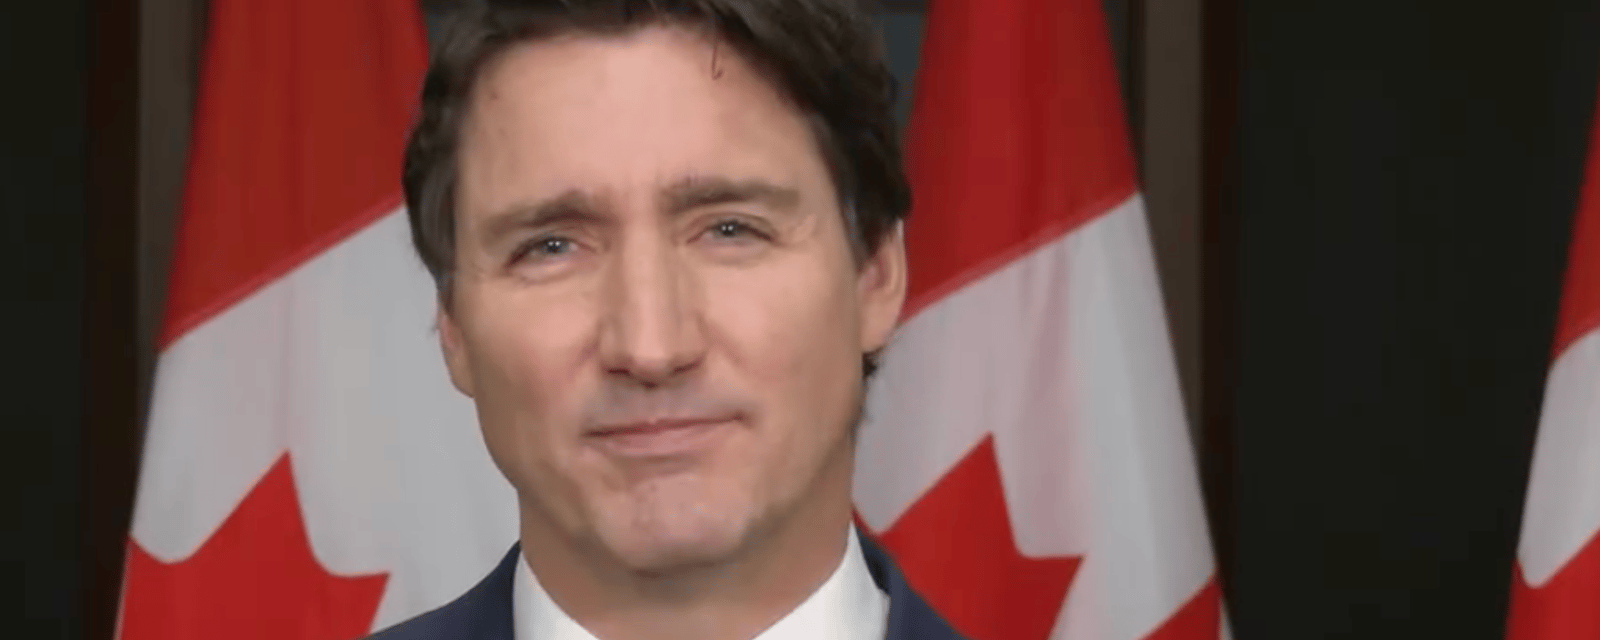 Justin Trudeau jette une douche d'eau glaciale sur les amateurs du 3è lien à Québec